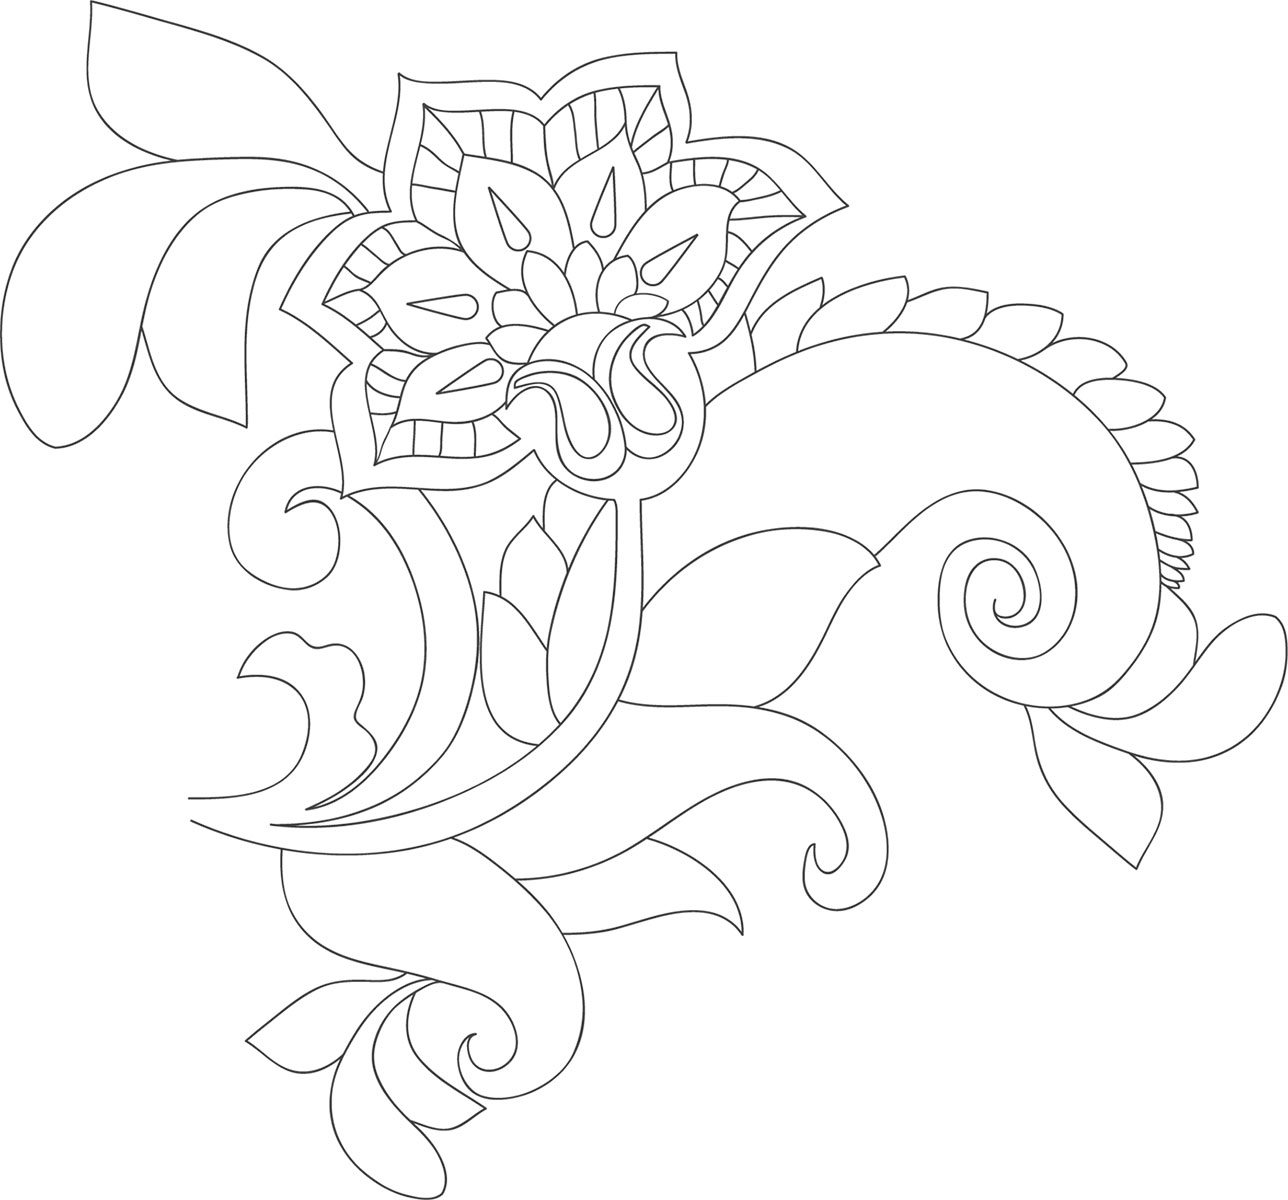 花のイラスト フリー素材 白黒 モノクロno 594 透過色 黒線 葉